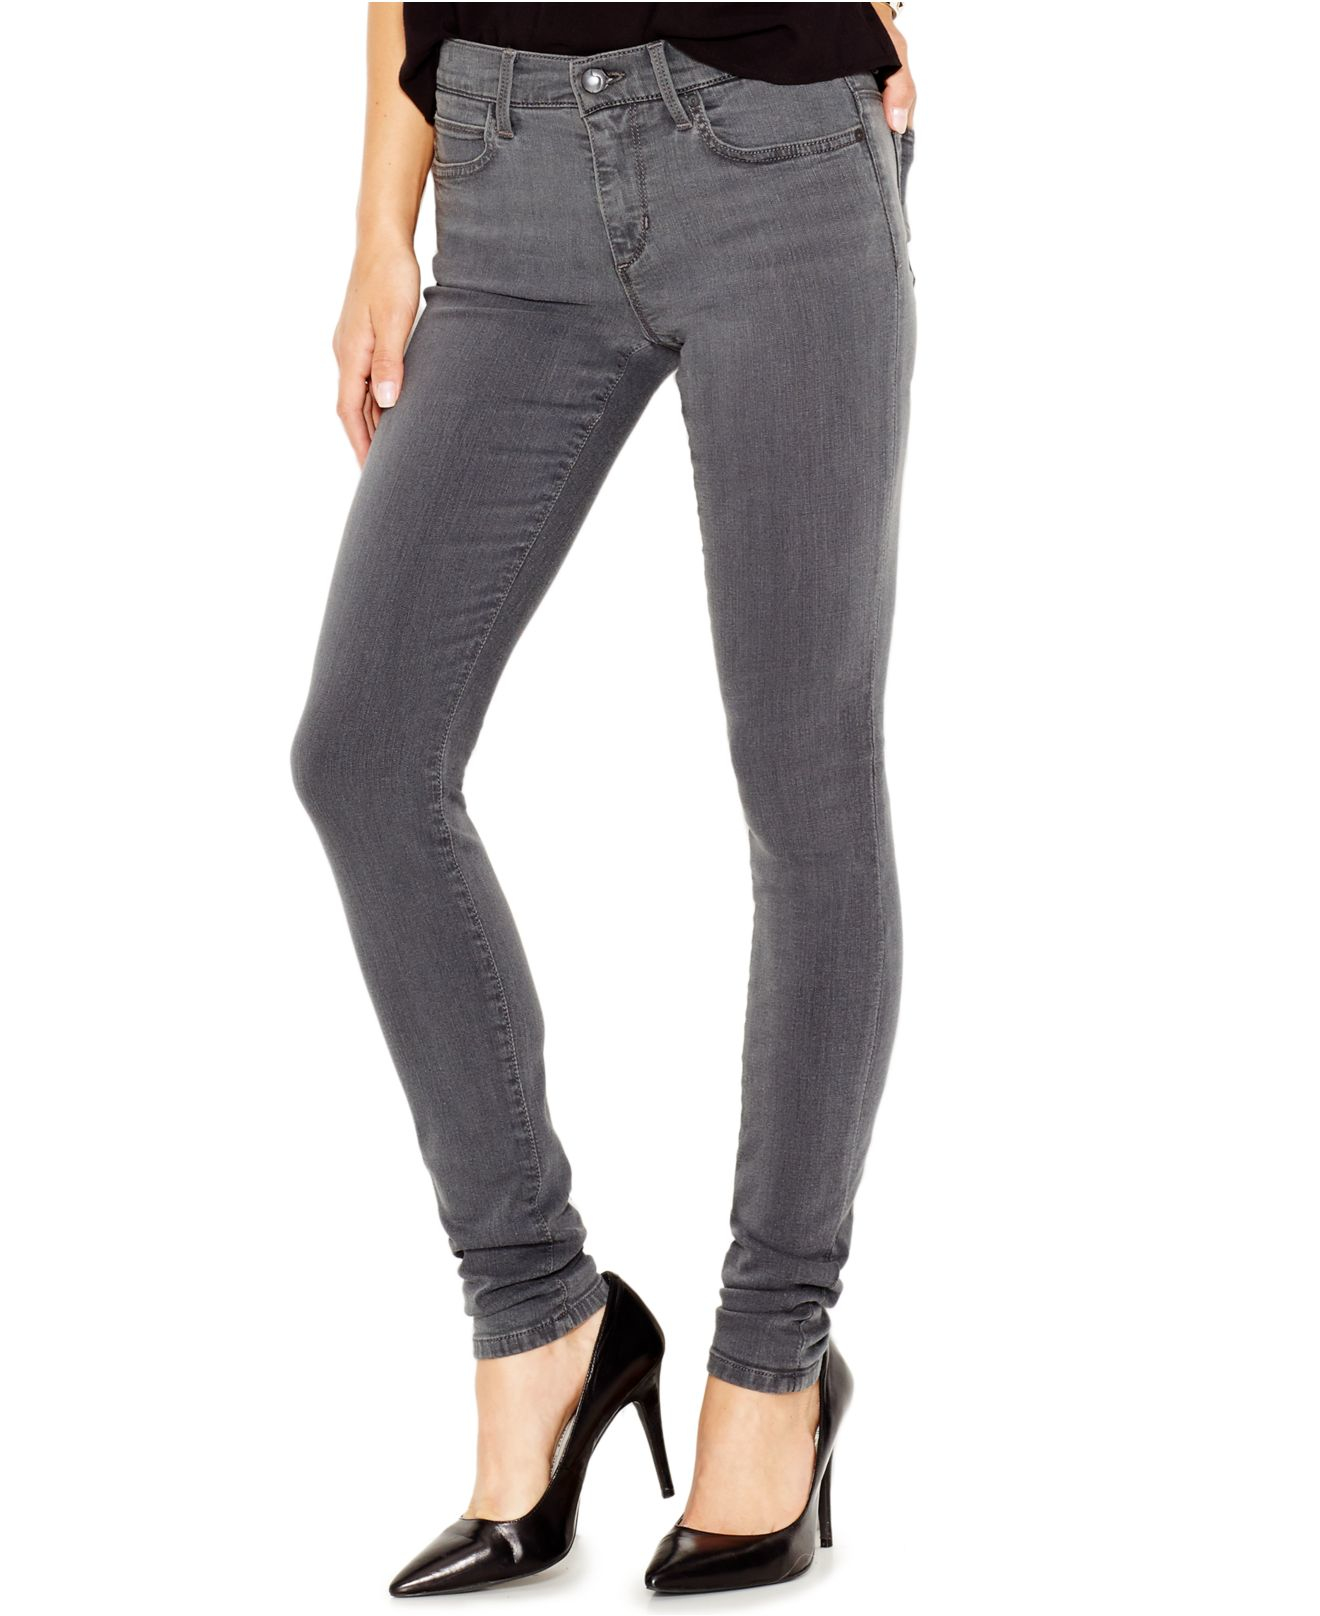 Lyst - Joe'S Jeans Joe's #hello Skinny Jeans, Aria Wash in Gray